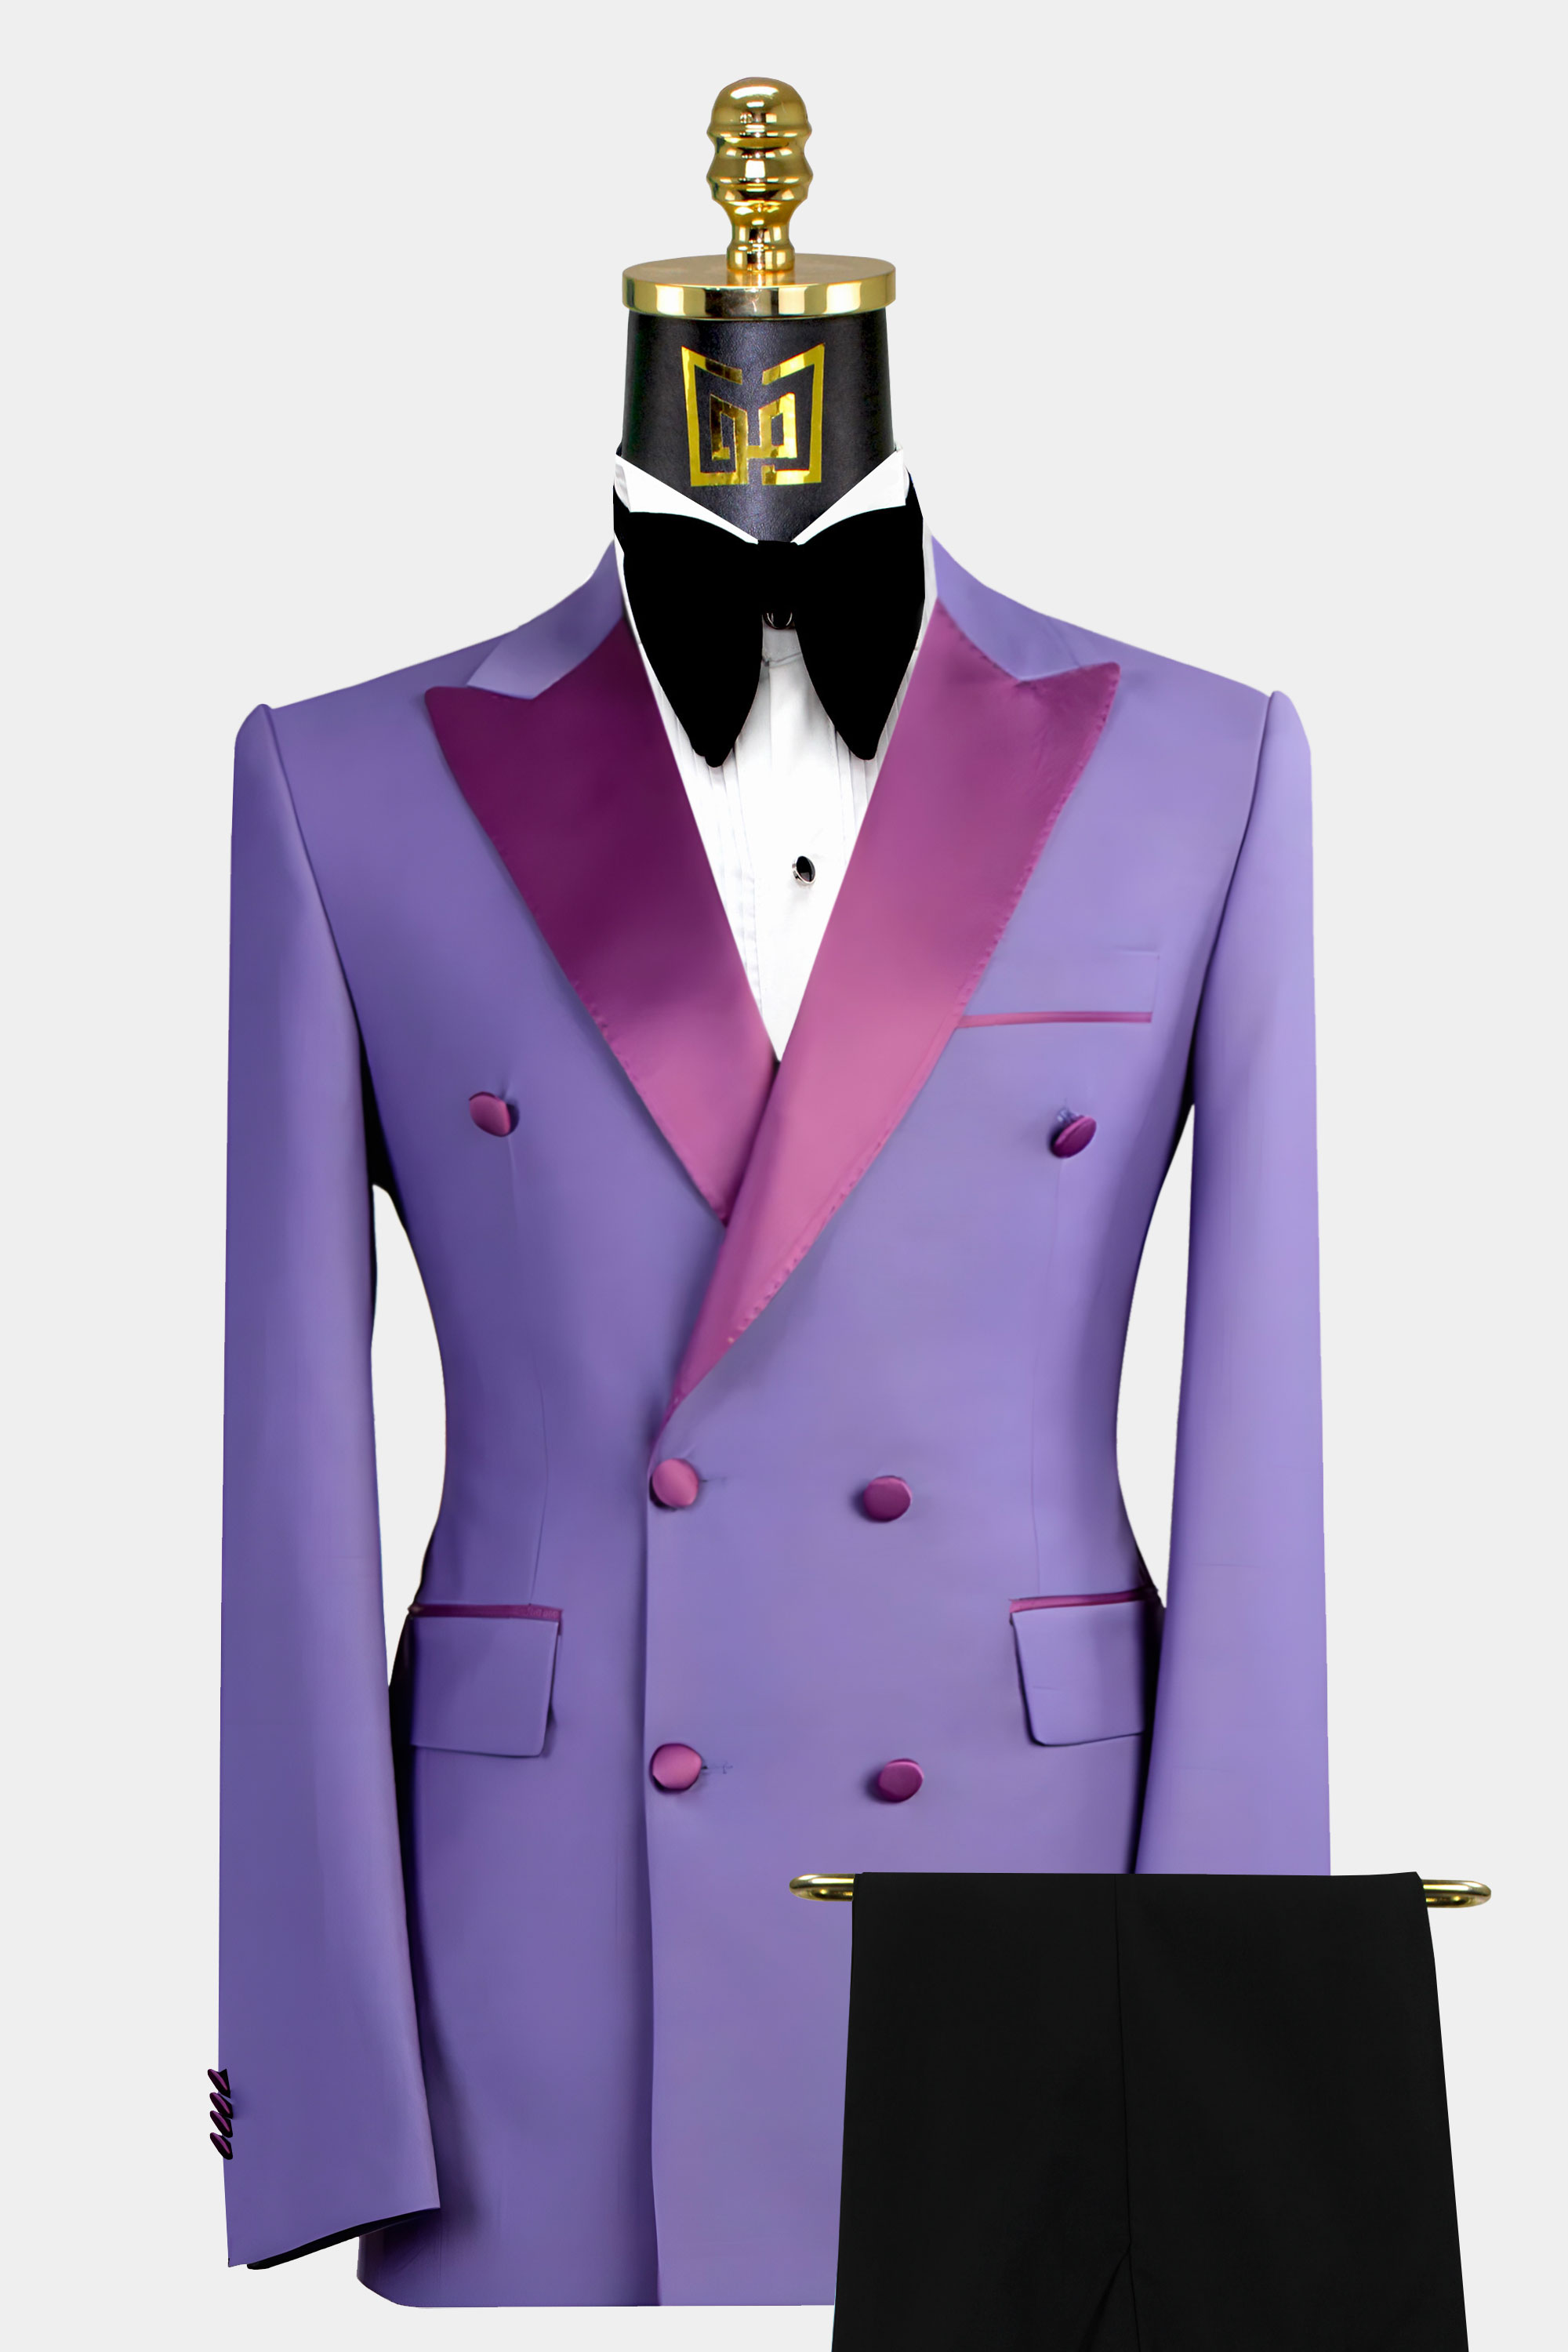 Lavender-Groom-Wedding-Suit-Tuxedo-from-Gentlemansguru.com